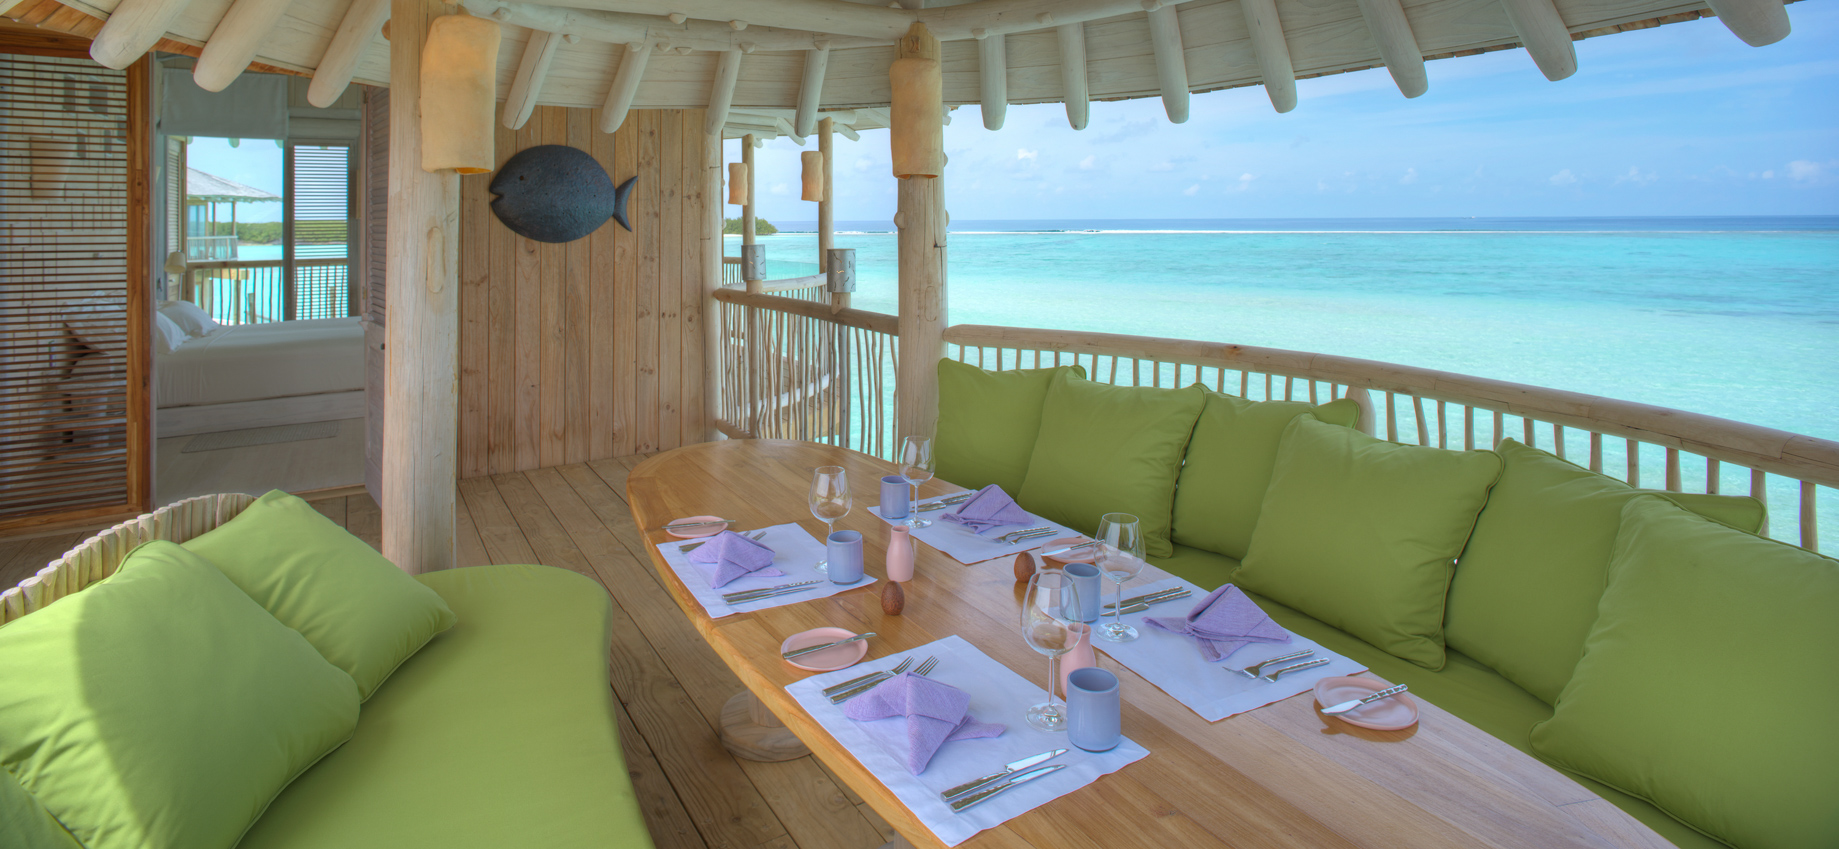 Soneva Jani Resort – Noonu Atoll, Medhufaru, Maldives – 2 Bedroom Water Retreat Villa Outdoor Dining Table